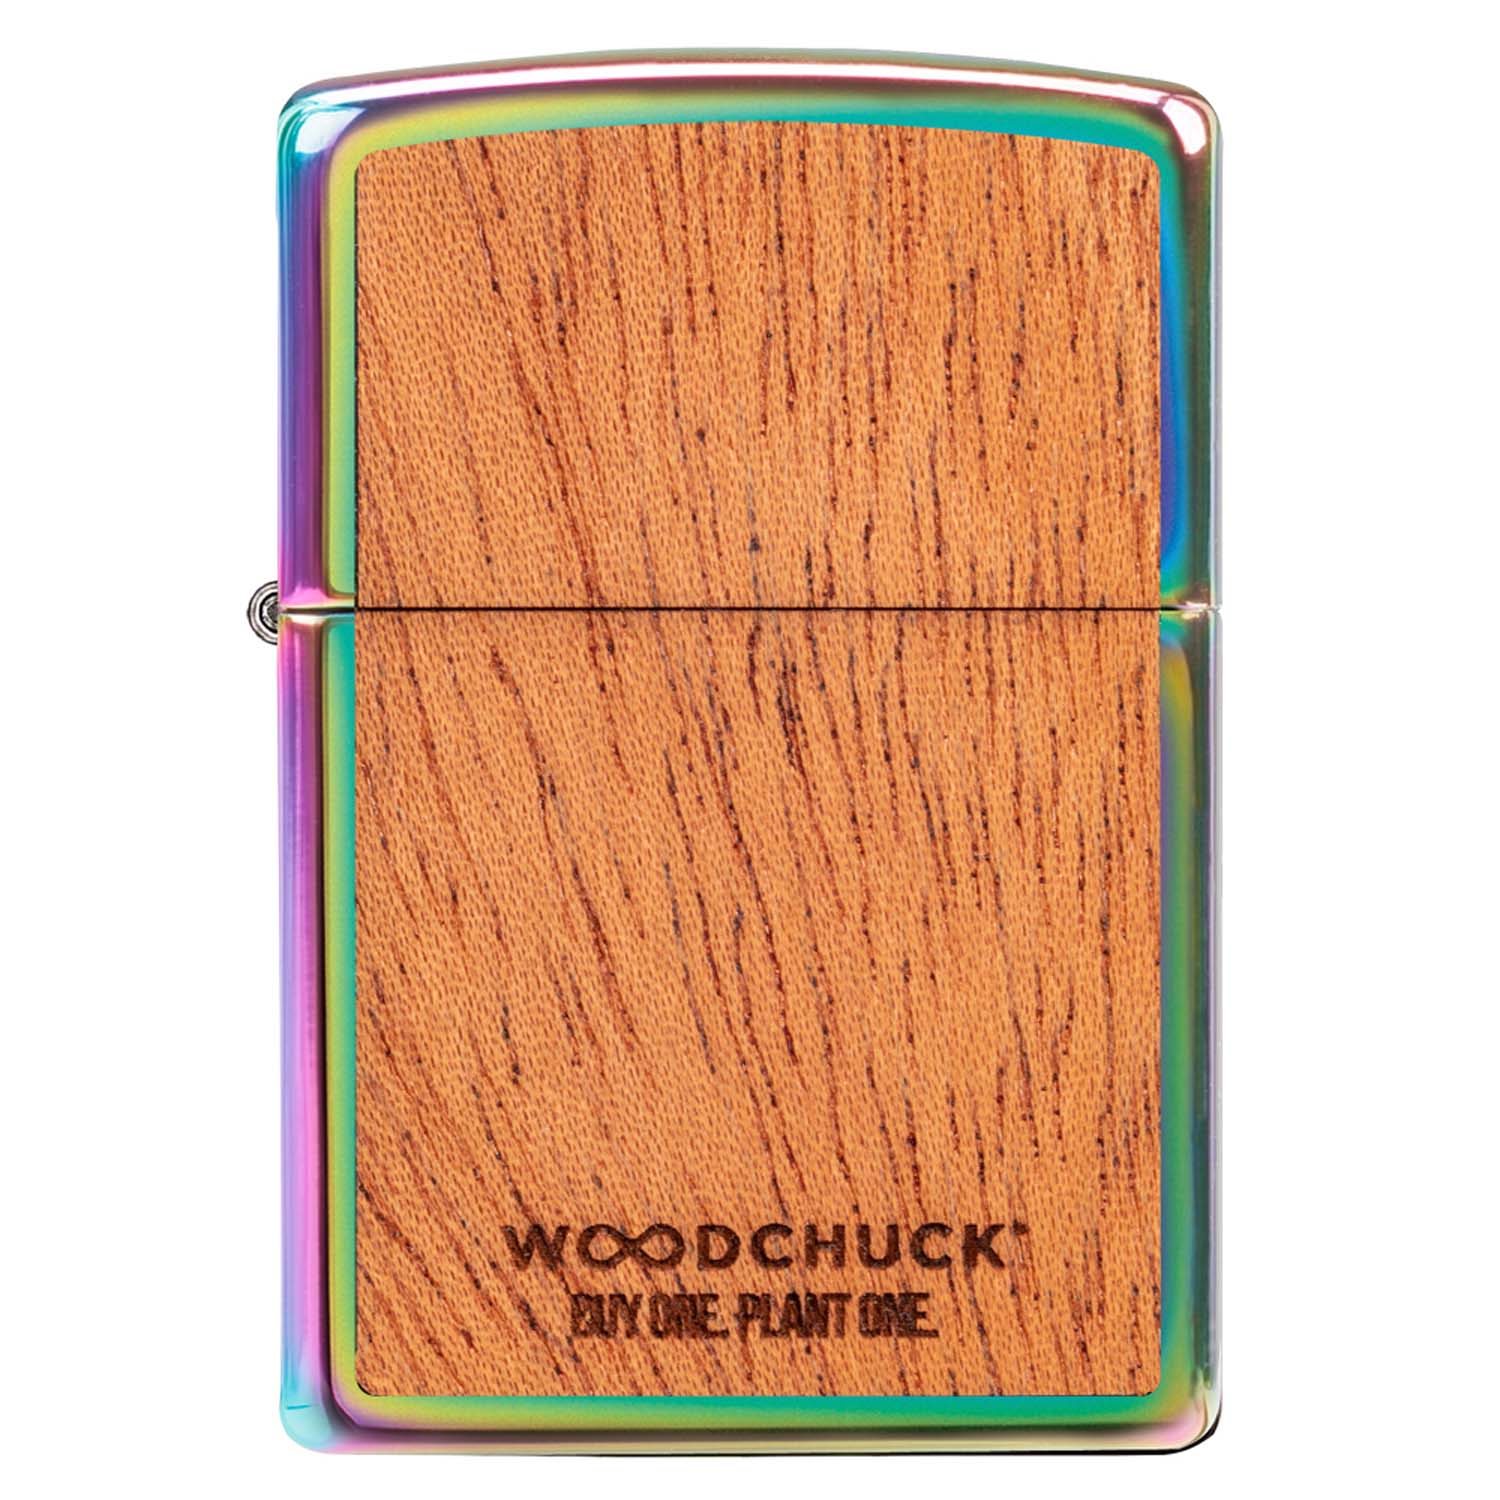 ZIPPO Rainbow Mahogany Emblem Woodchuck 60004581